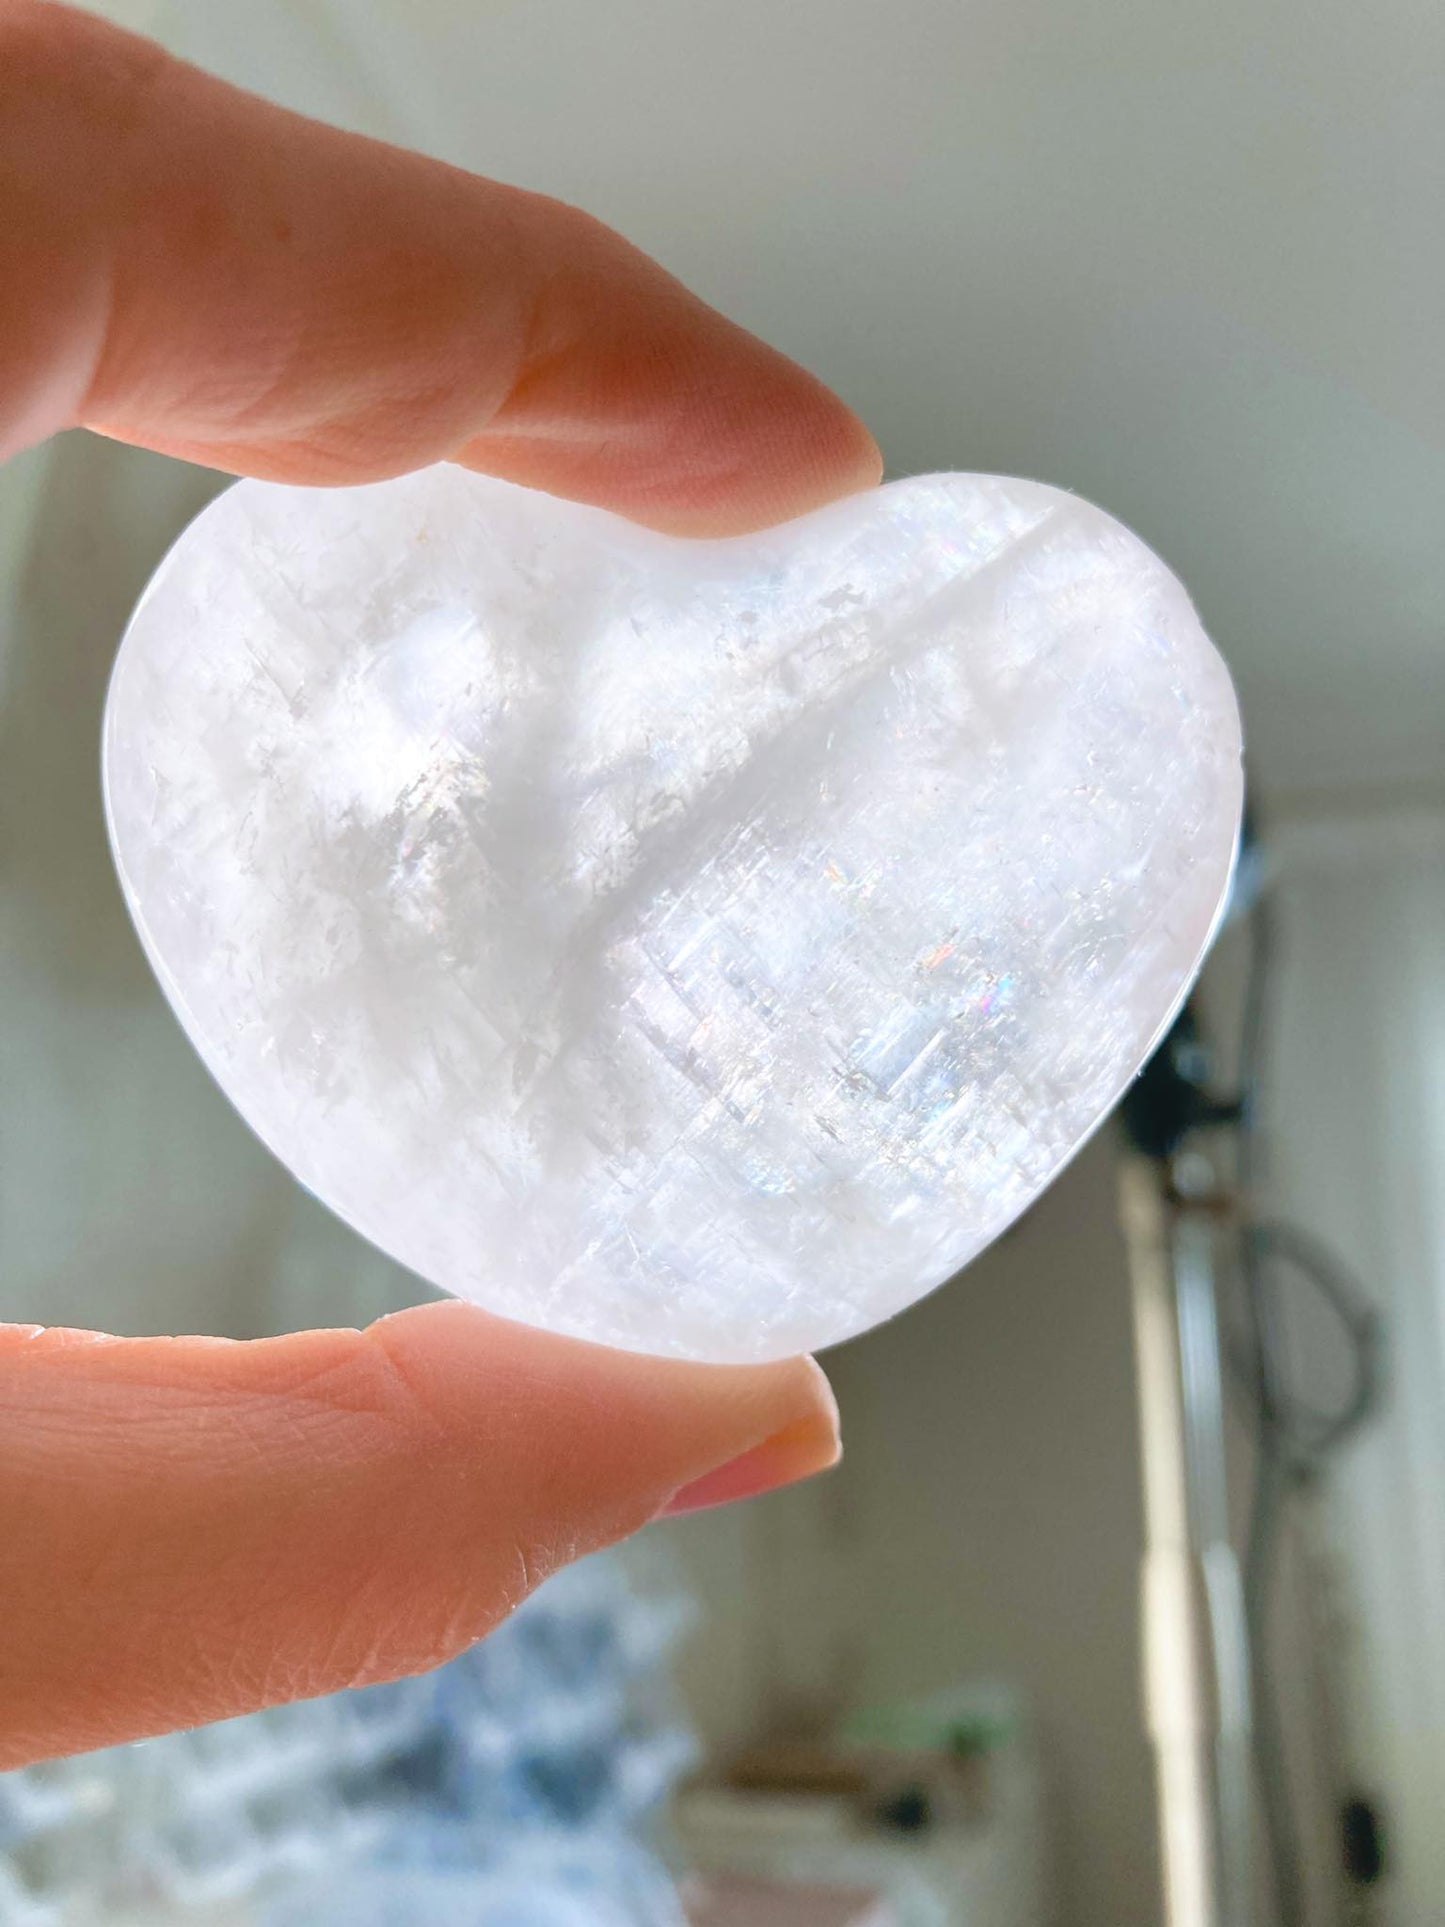 Weisses Calcit Herz mit Regenbögen / White Calcite Heart with Rainbows ca. 4-5 cm - aus Mexiko High Quality